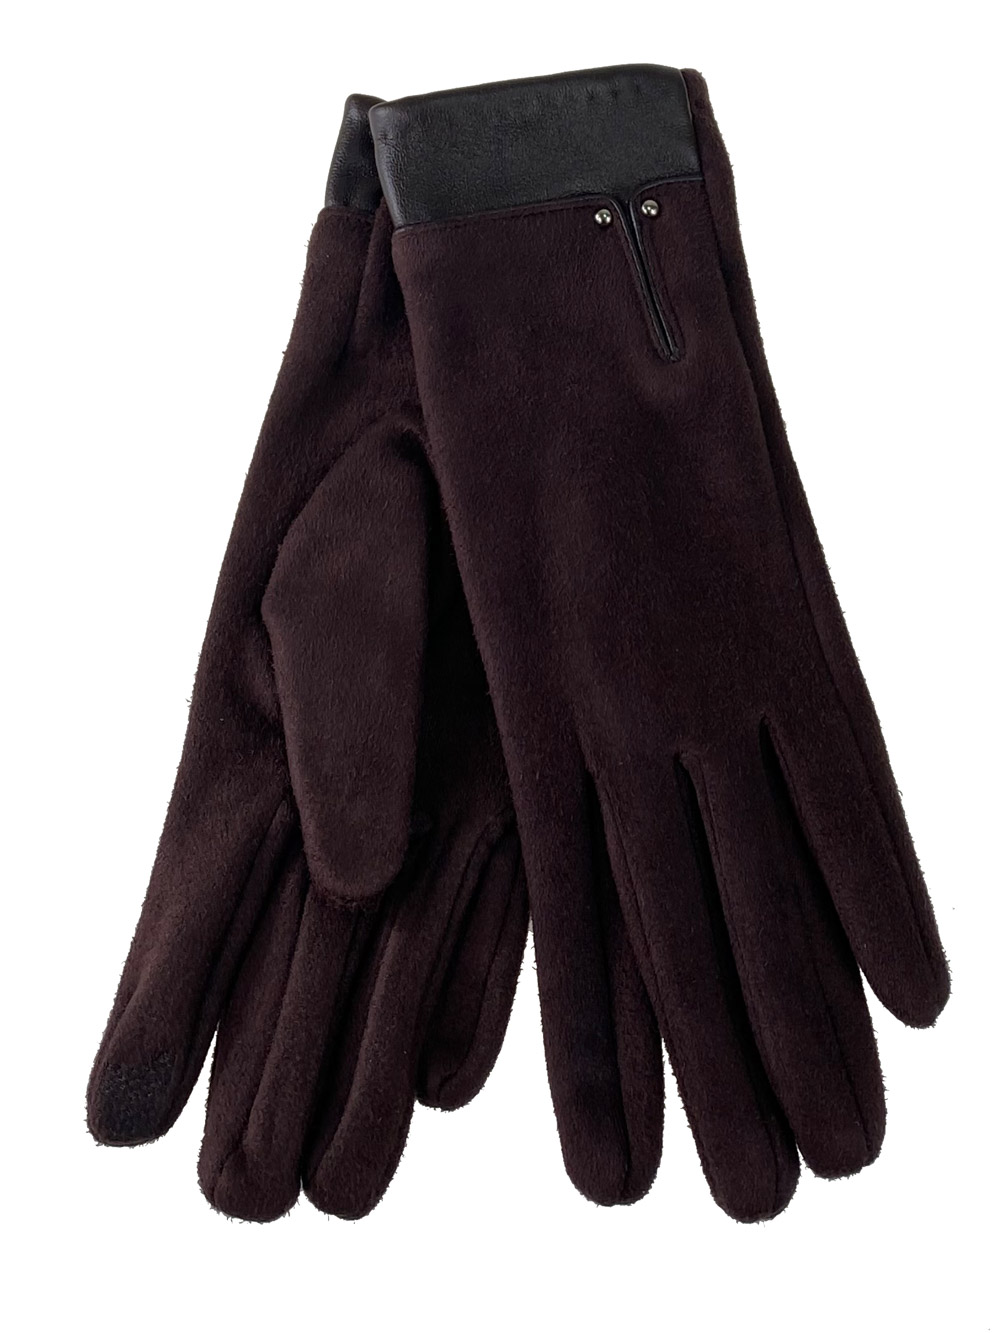 Велюровые женские перчатки с манжетой из натуральной кожи, цвет шоколад